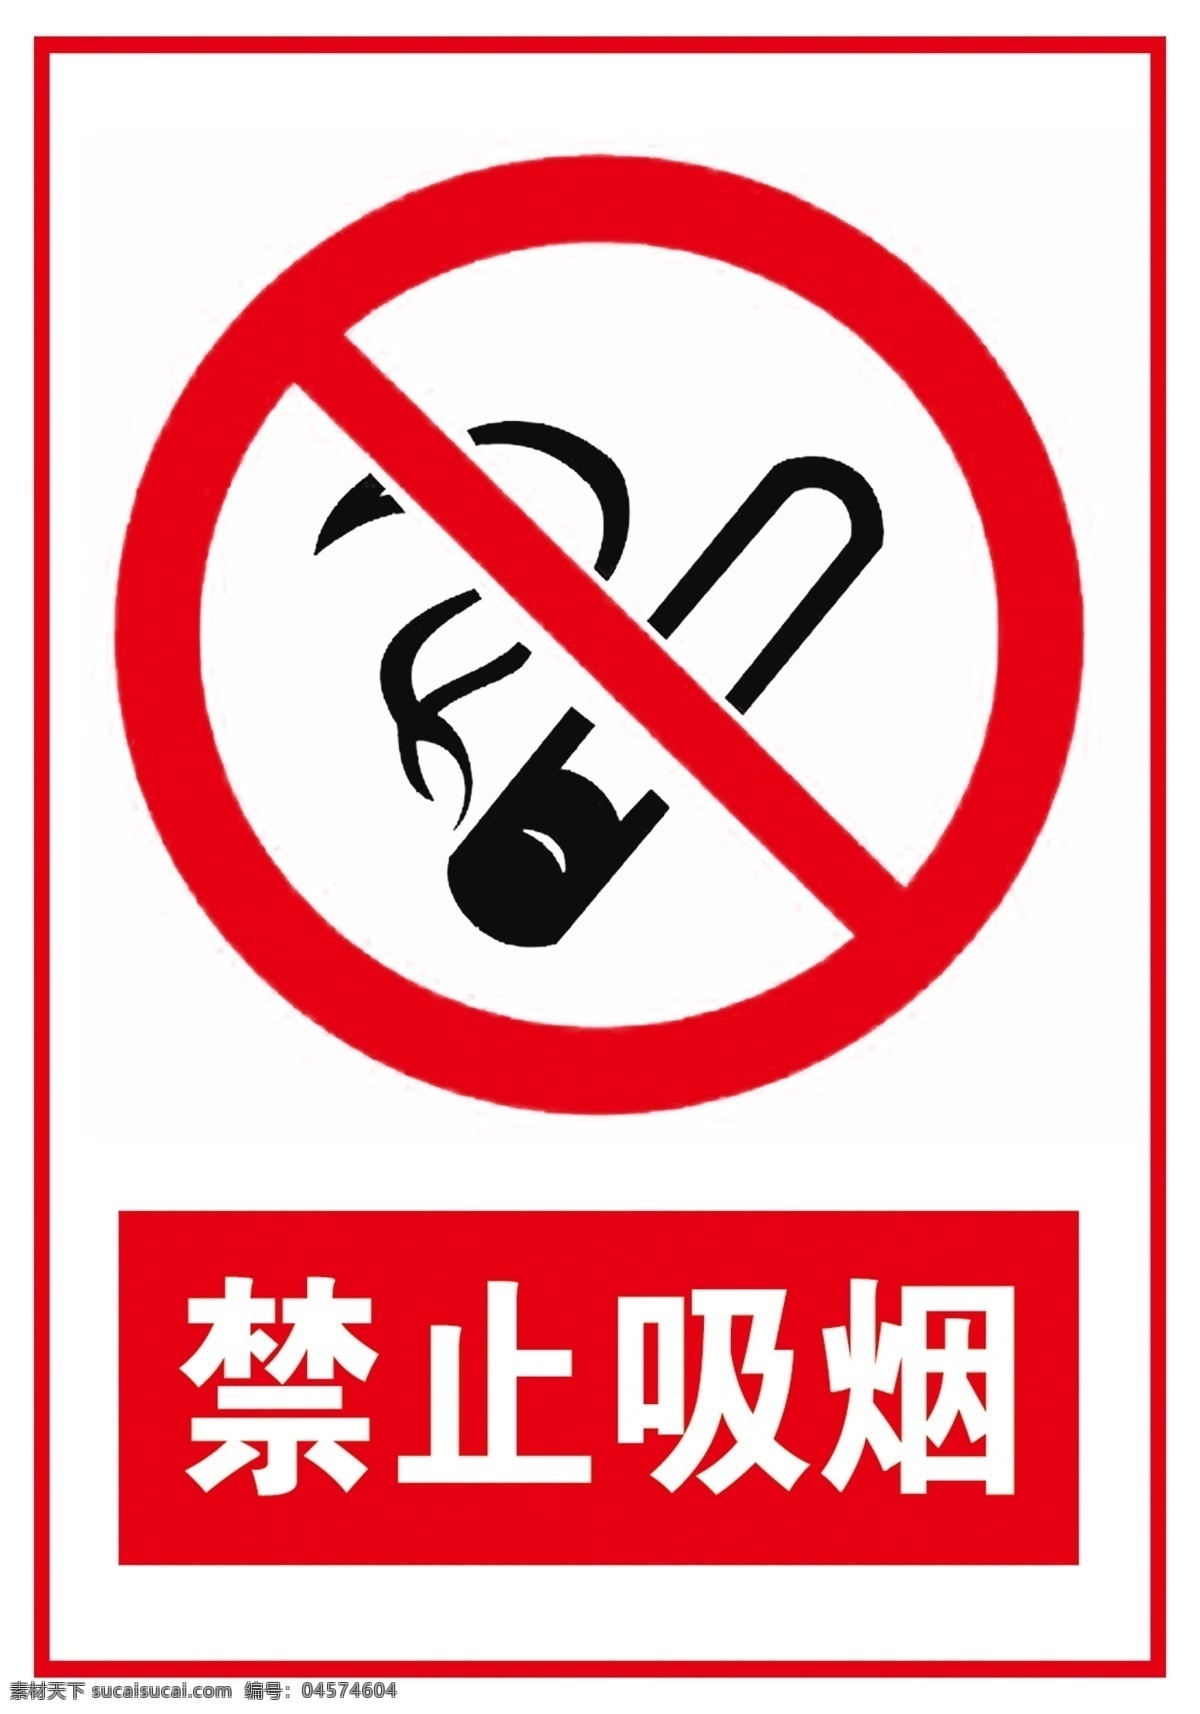 禁止吸烟标志 禁止吸烟样式 禁止吸烟模版 禁止吸烟牌 温馨提示标牌 温馨提示 请勿吸烟 请勿吸烟标志 请勿吸烟样式 请勿吸烟模版 请勿吸烟牌 广告设 公共标识 标志图标 公共标识标志